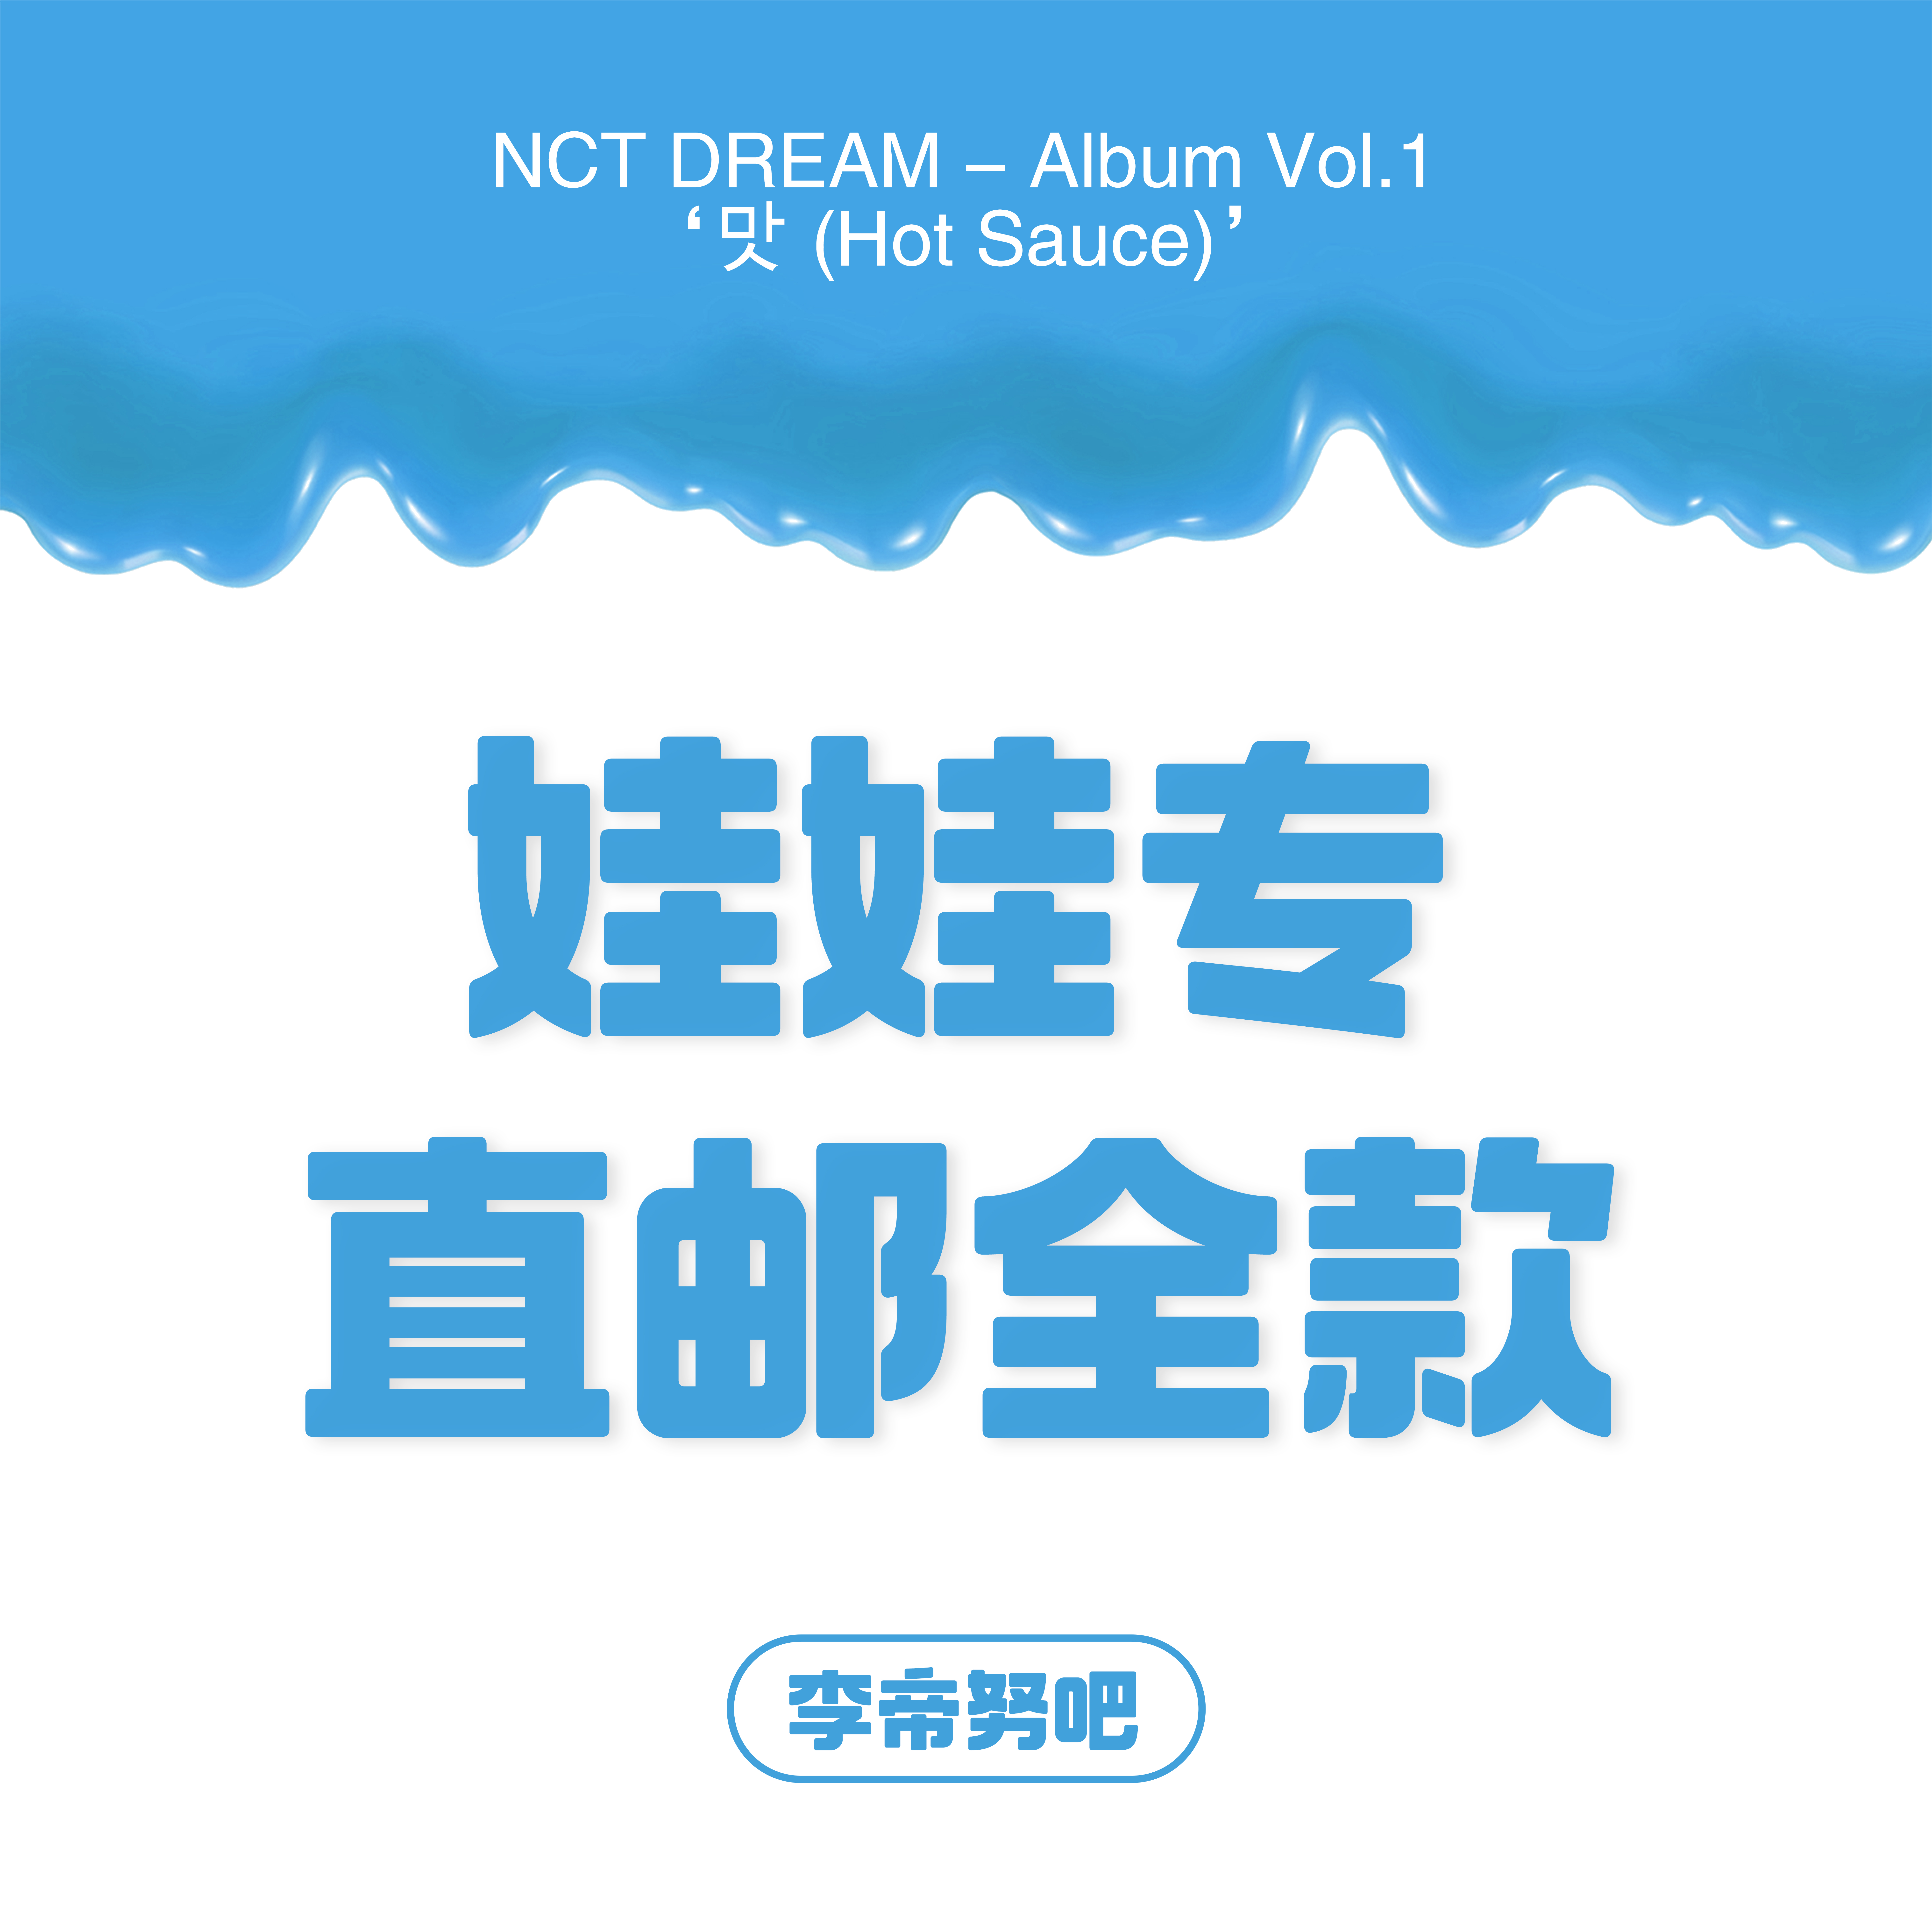 [全款 娃娃专运回] NCT DREAM - Album Vol.1 [맛 (Hot Sauce)] (写真集版本) (随机版本) (*购买2张或以上是会提供不同版本)- 李帝努吧_JenoBar